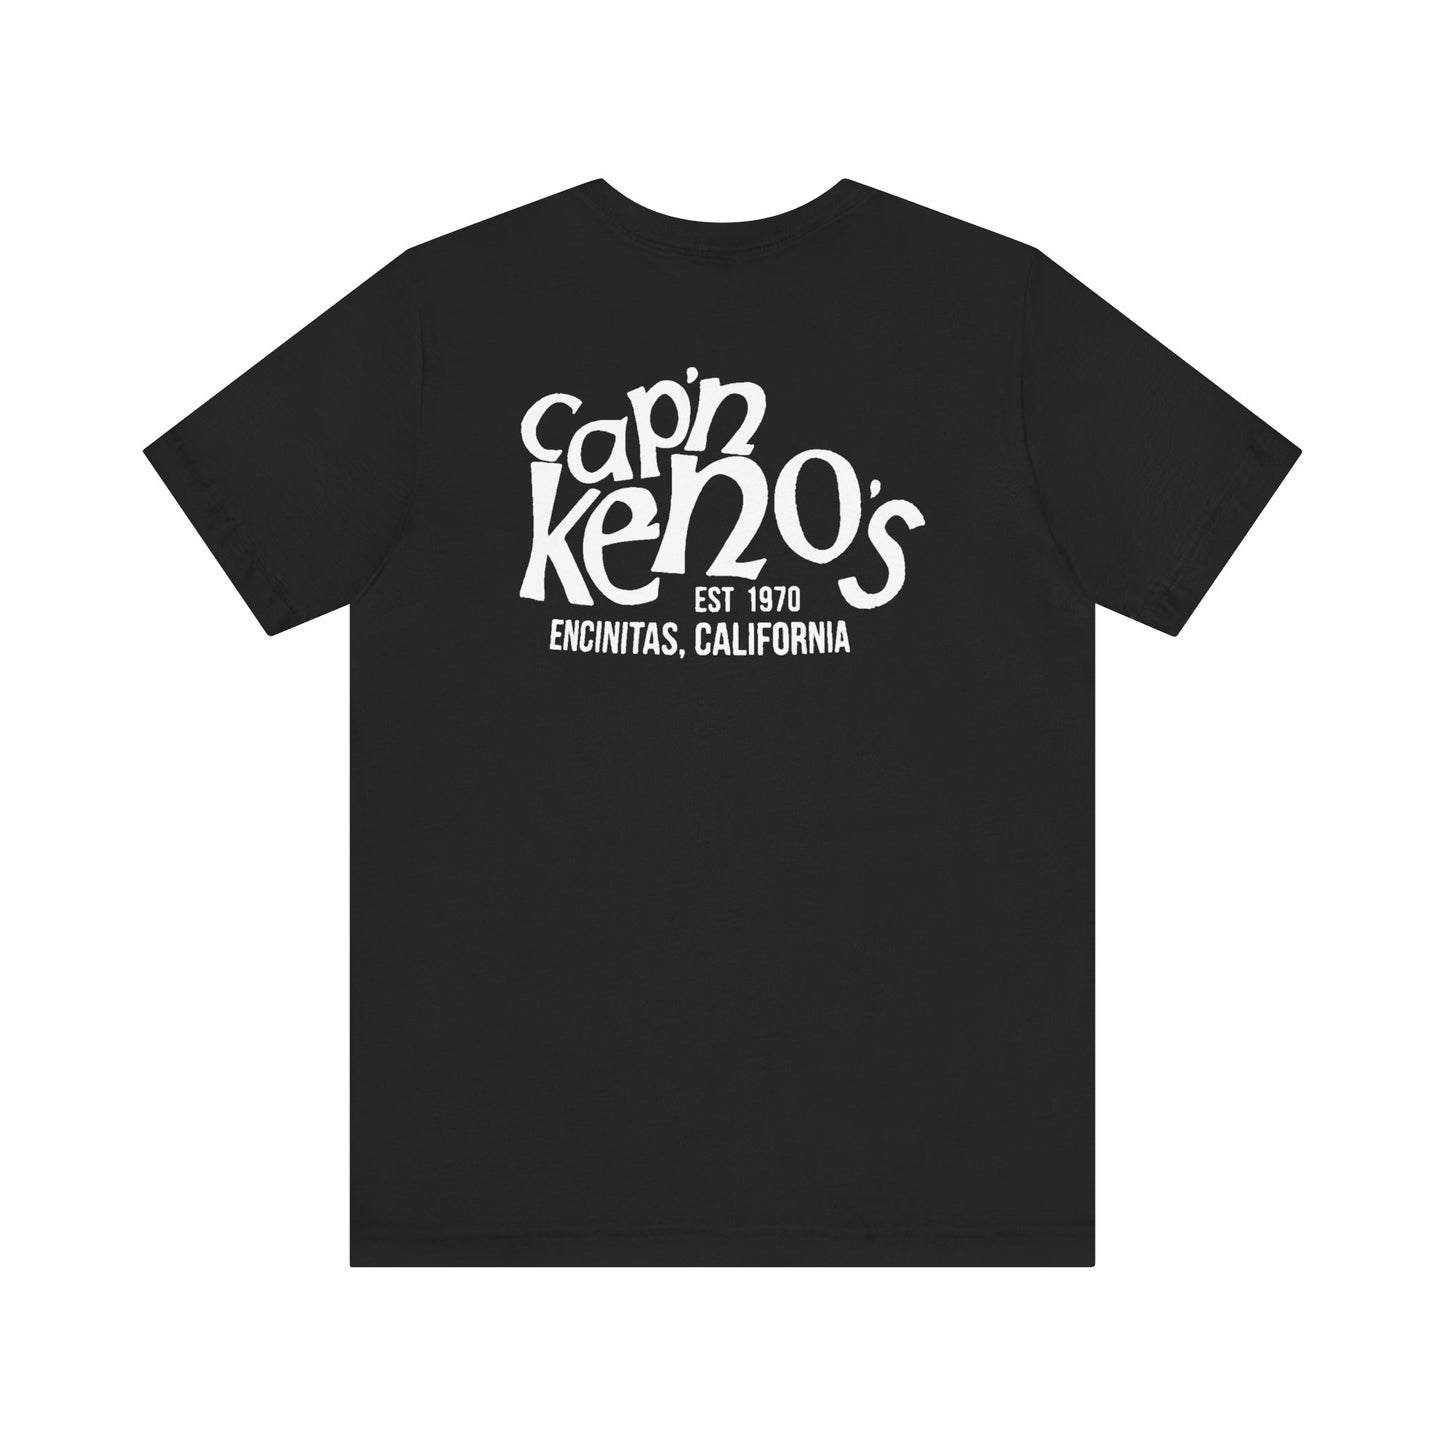 Cap'n Kenos T-Shirts